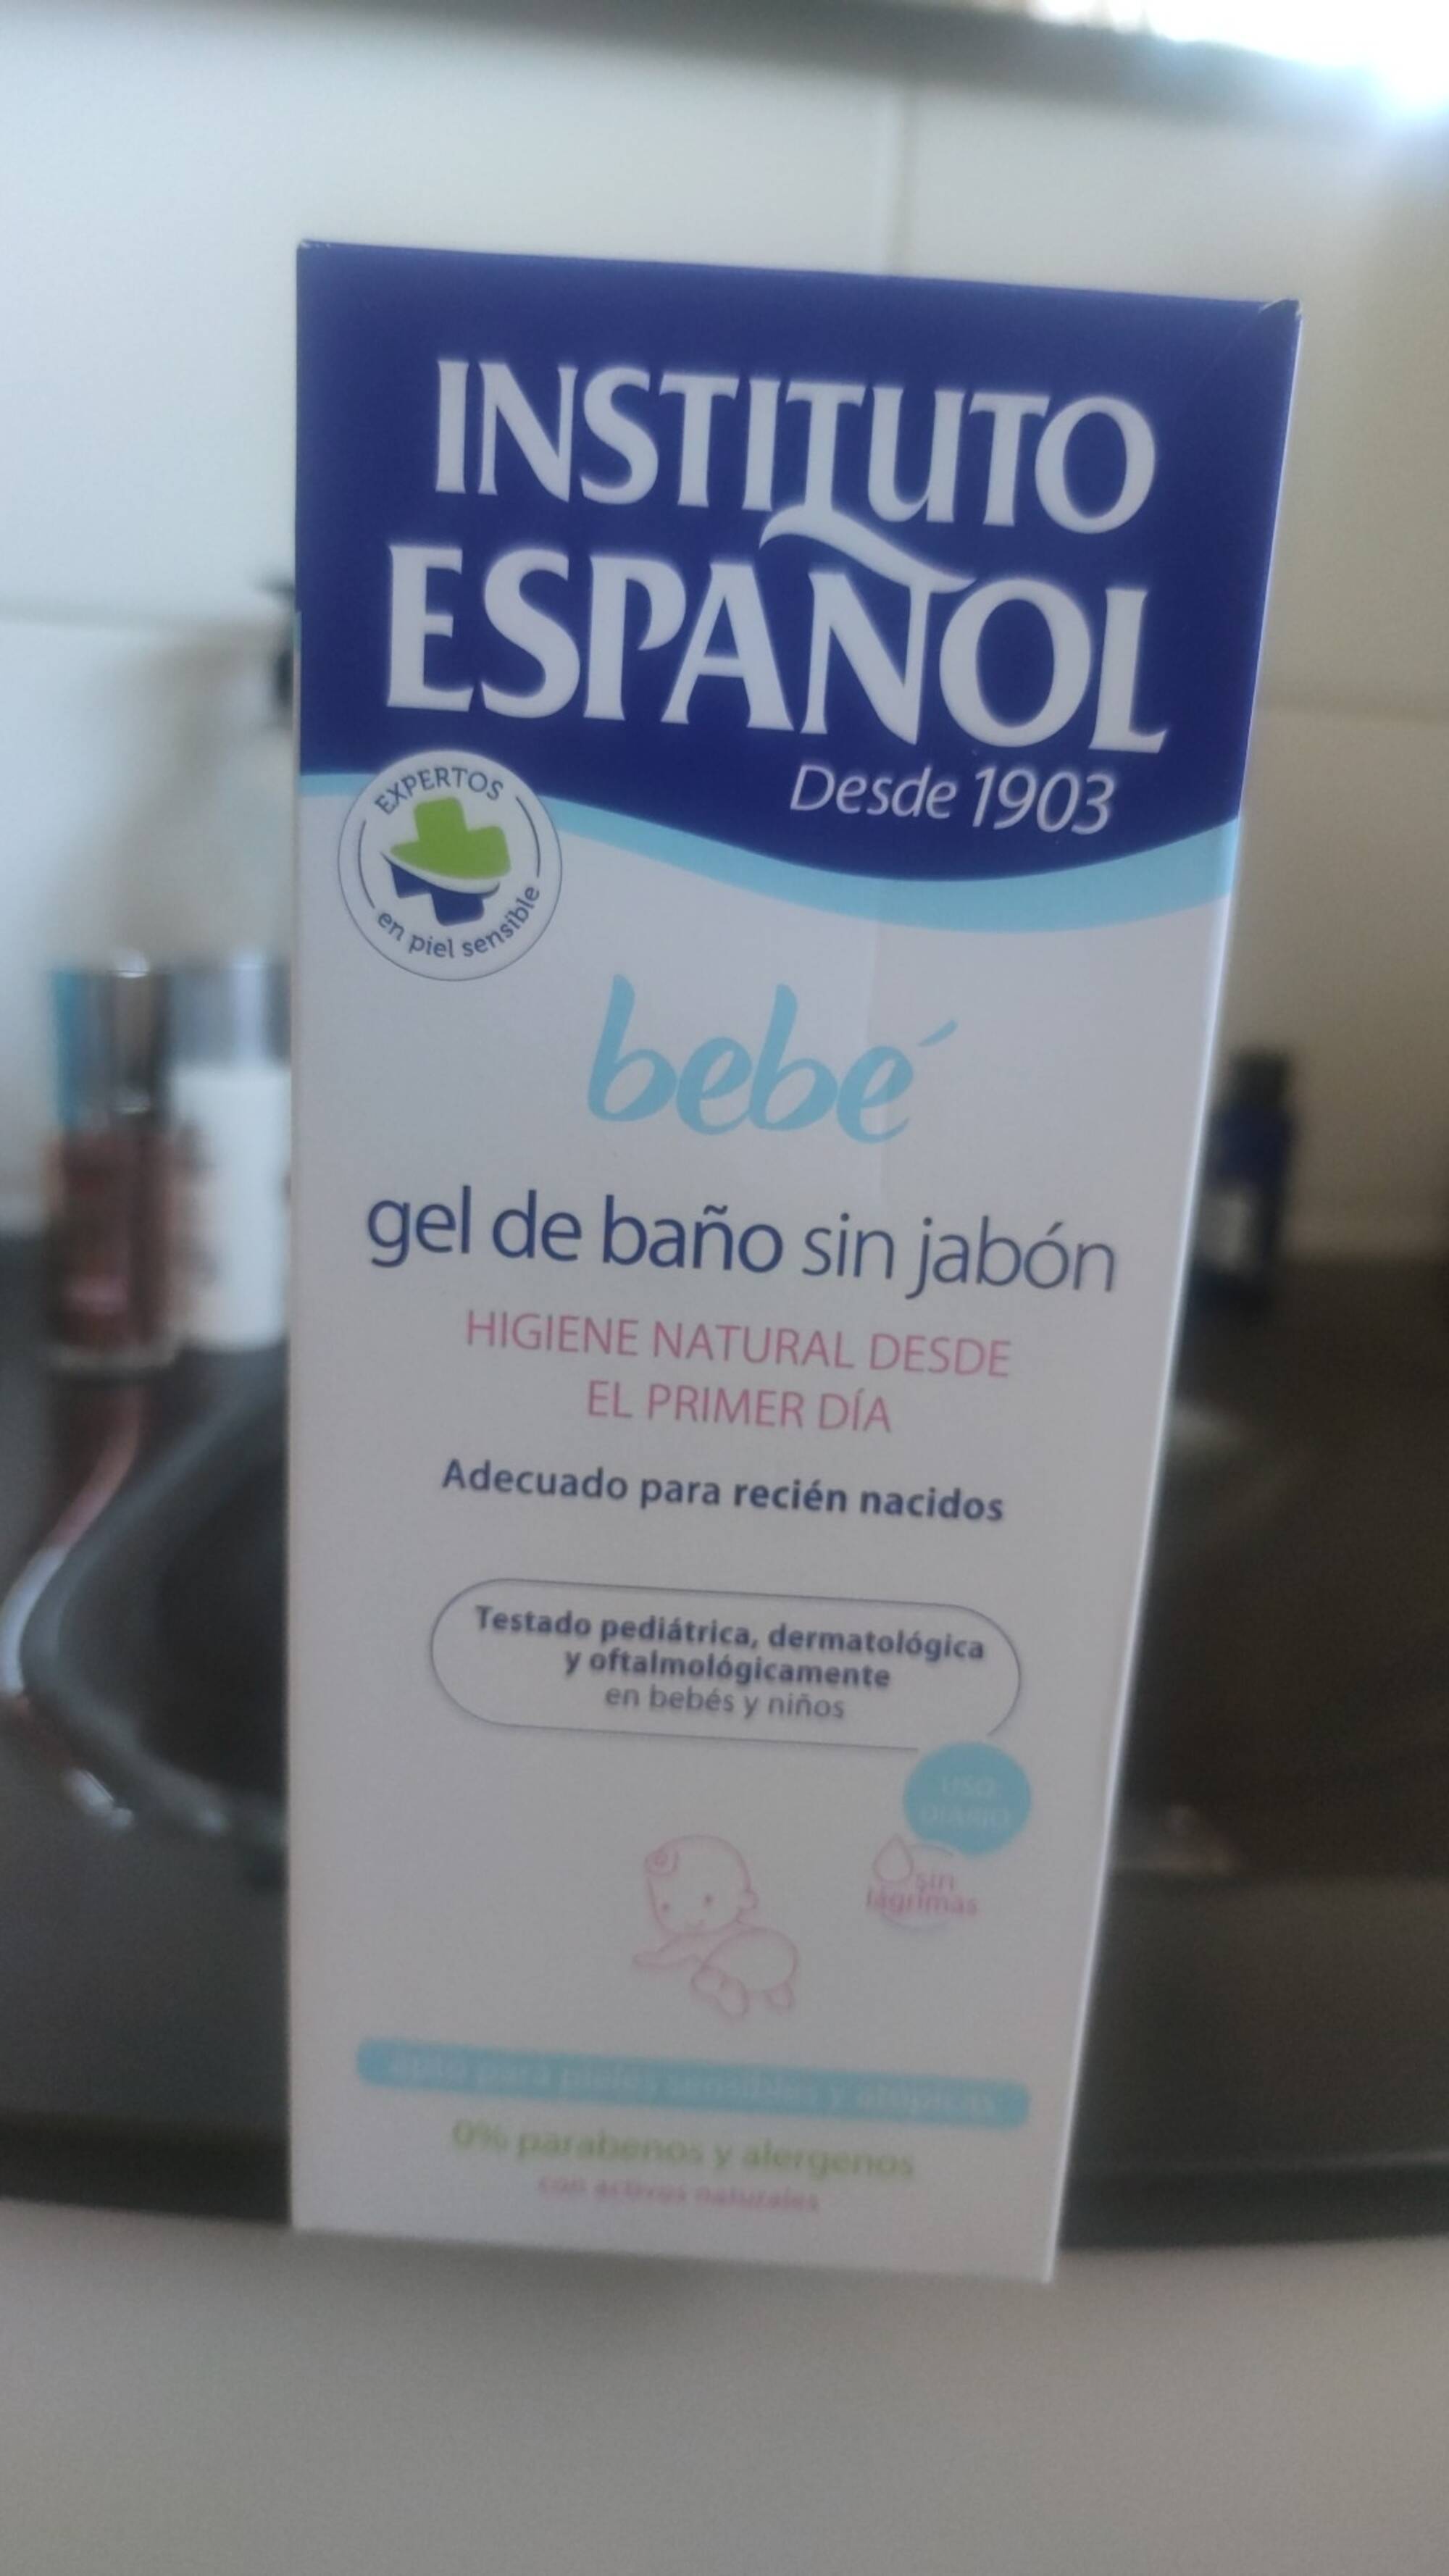 INSTITUTO ESPANOL - Bebé - Gel de bano sin jabon